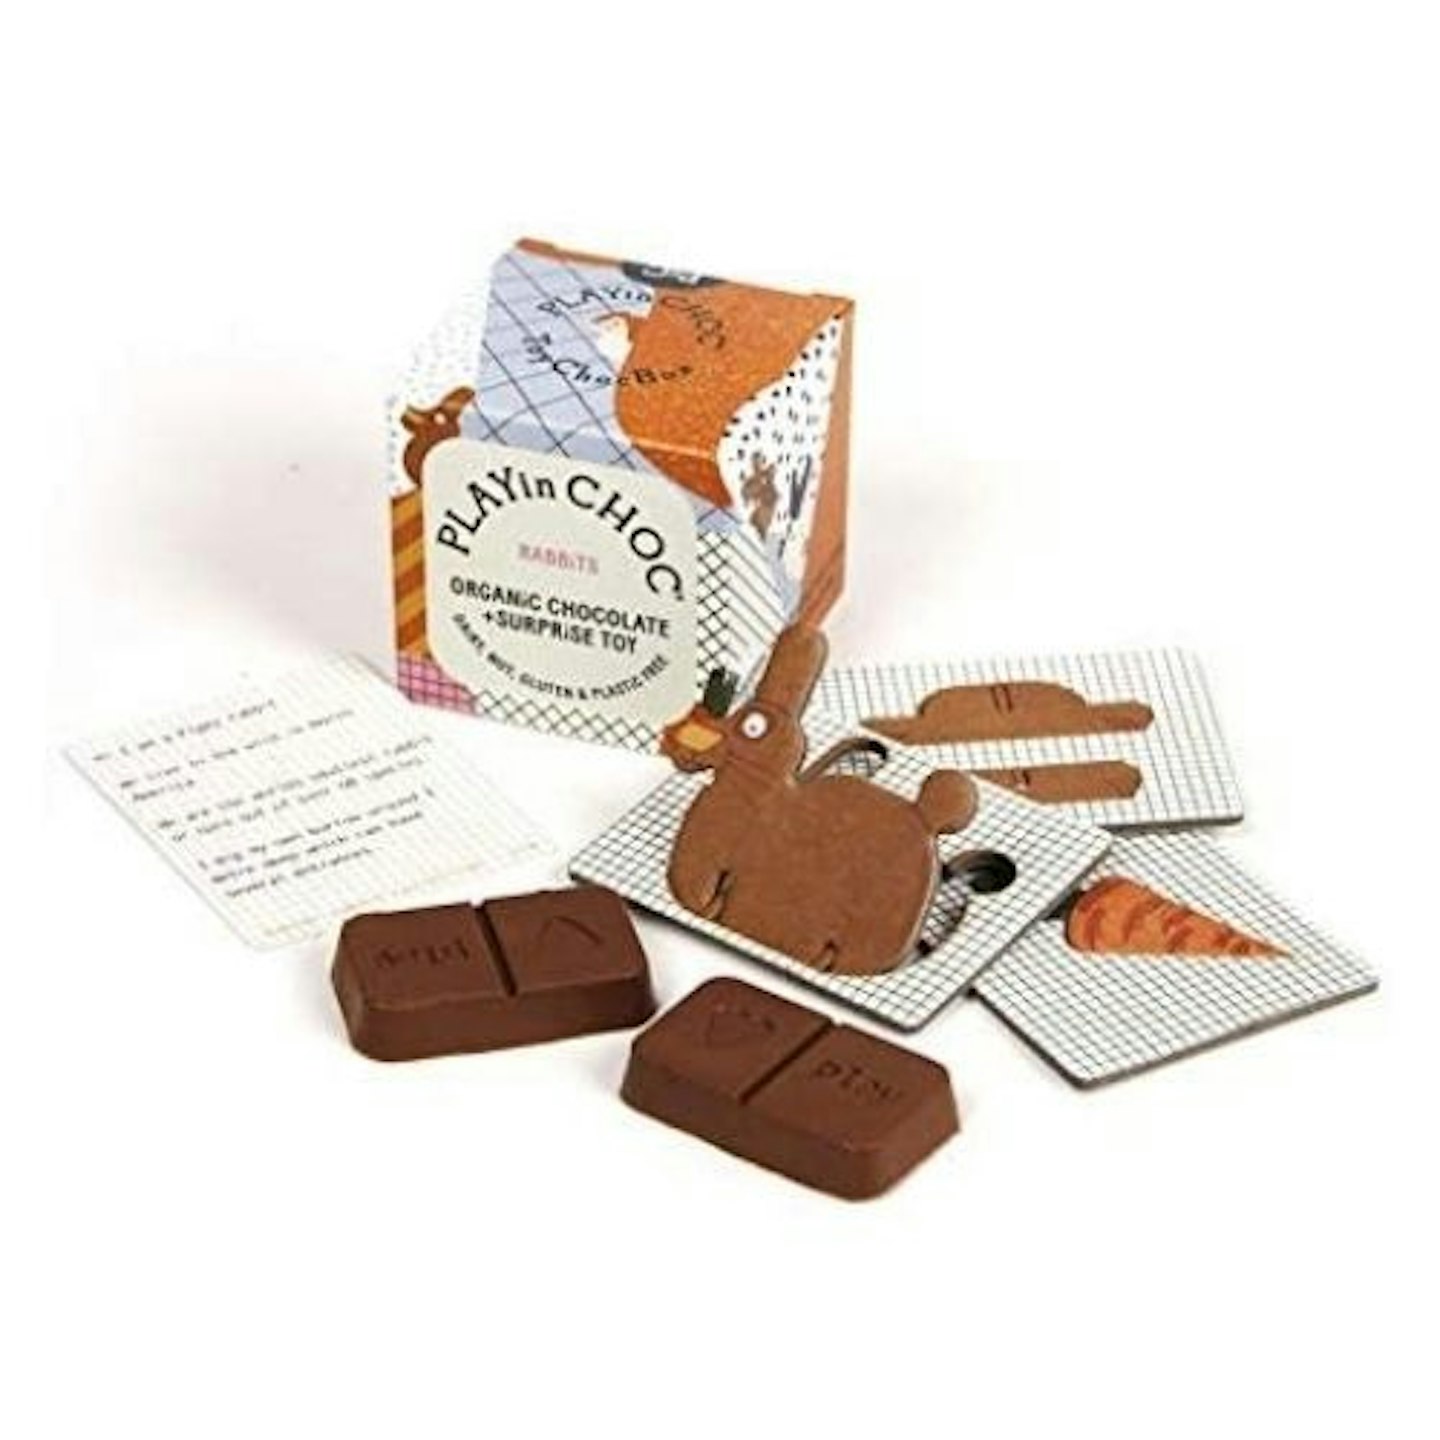 Rabbit Toy and Organic Chocolate, Gift Box